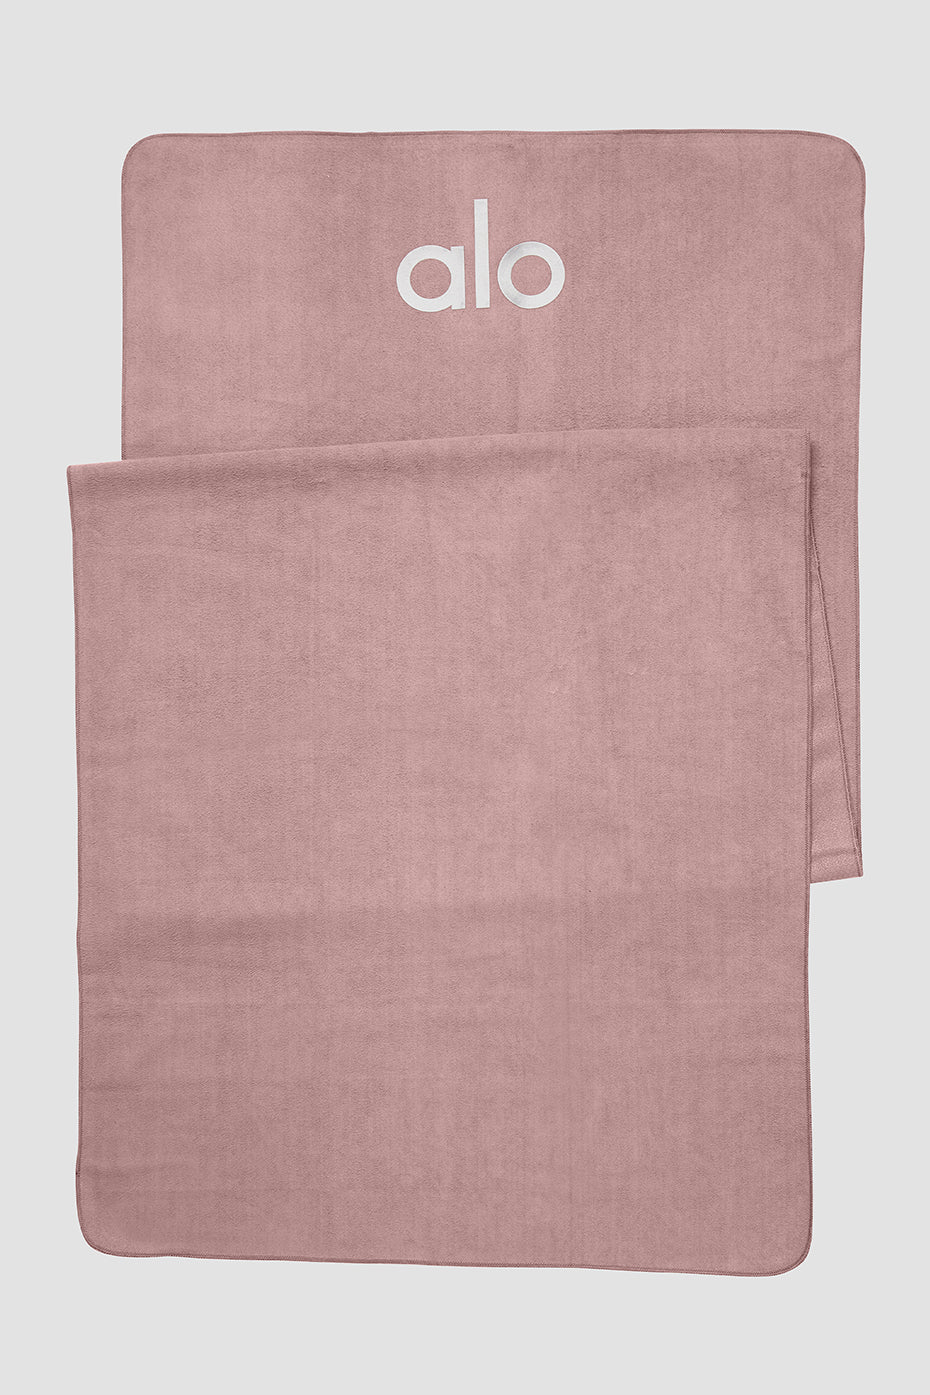 Alo Yoga Perf No Sweat Hand TWL, Bright Aqua Tie Dye, One Size, Bright Aqua  Tie Dye, One size : : Fashion